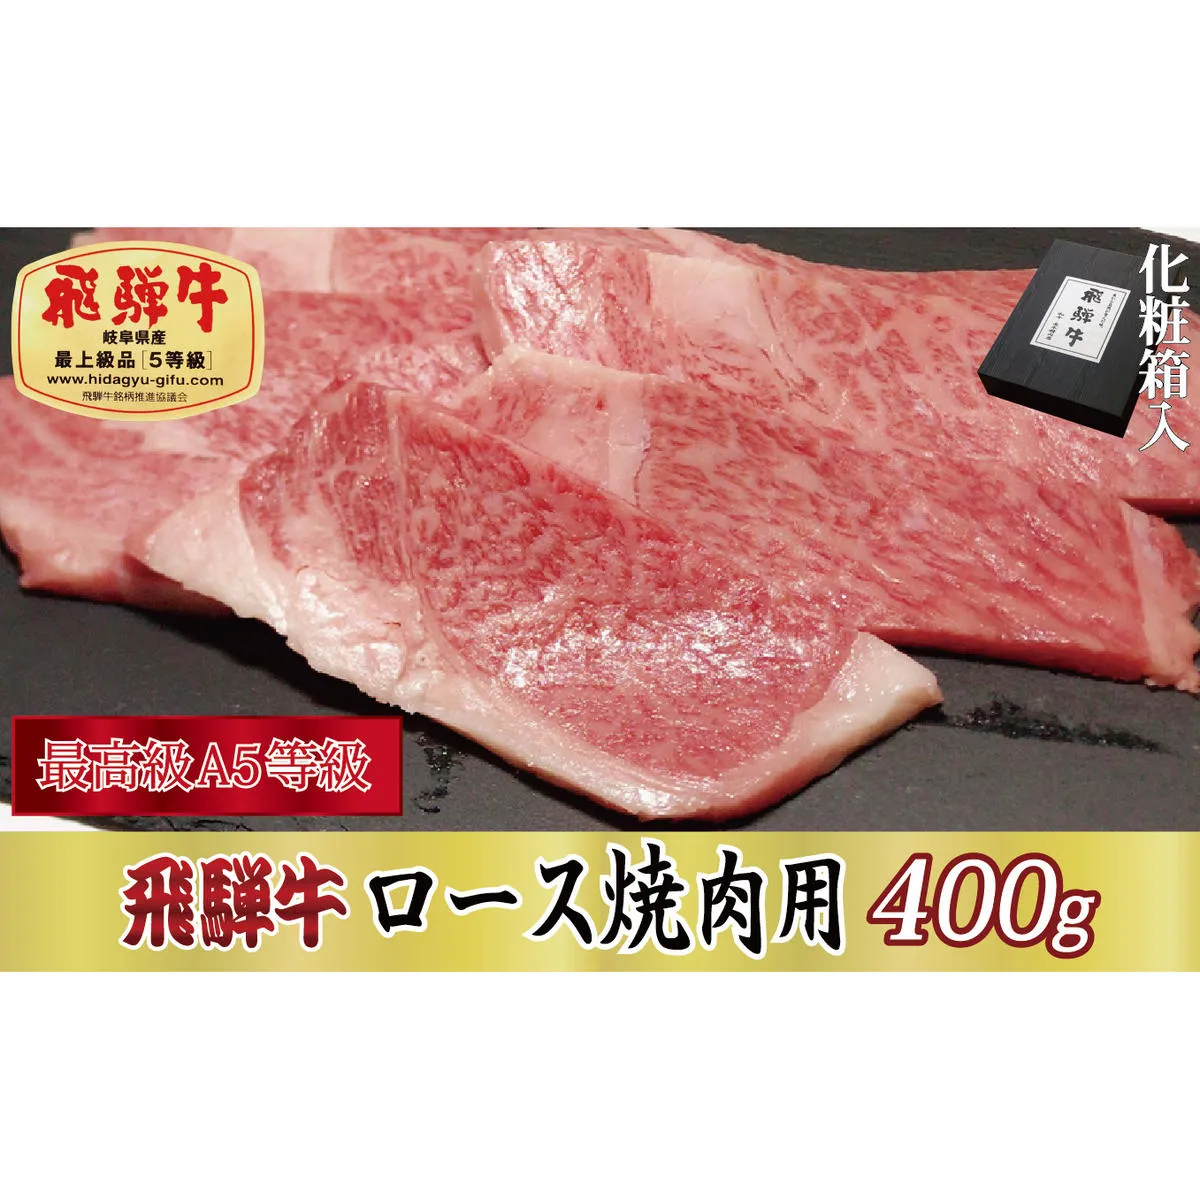 【化粧箱入り・最高級A5等級】飛騨牛ロース焼肉用400g